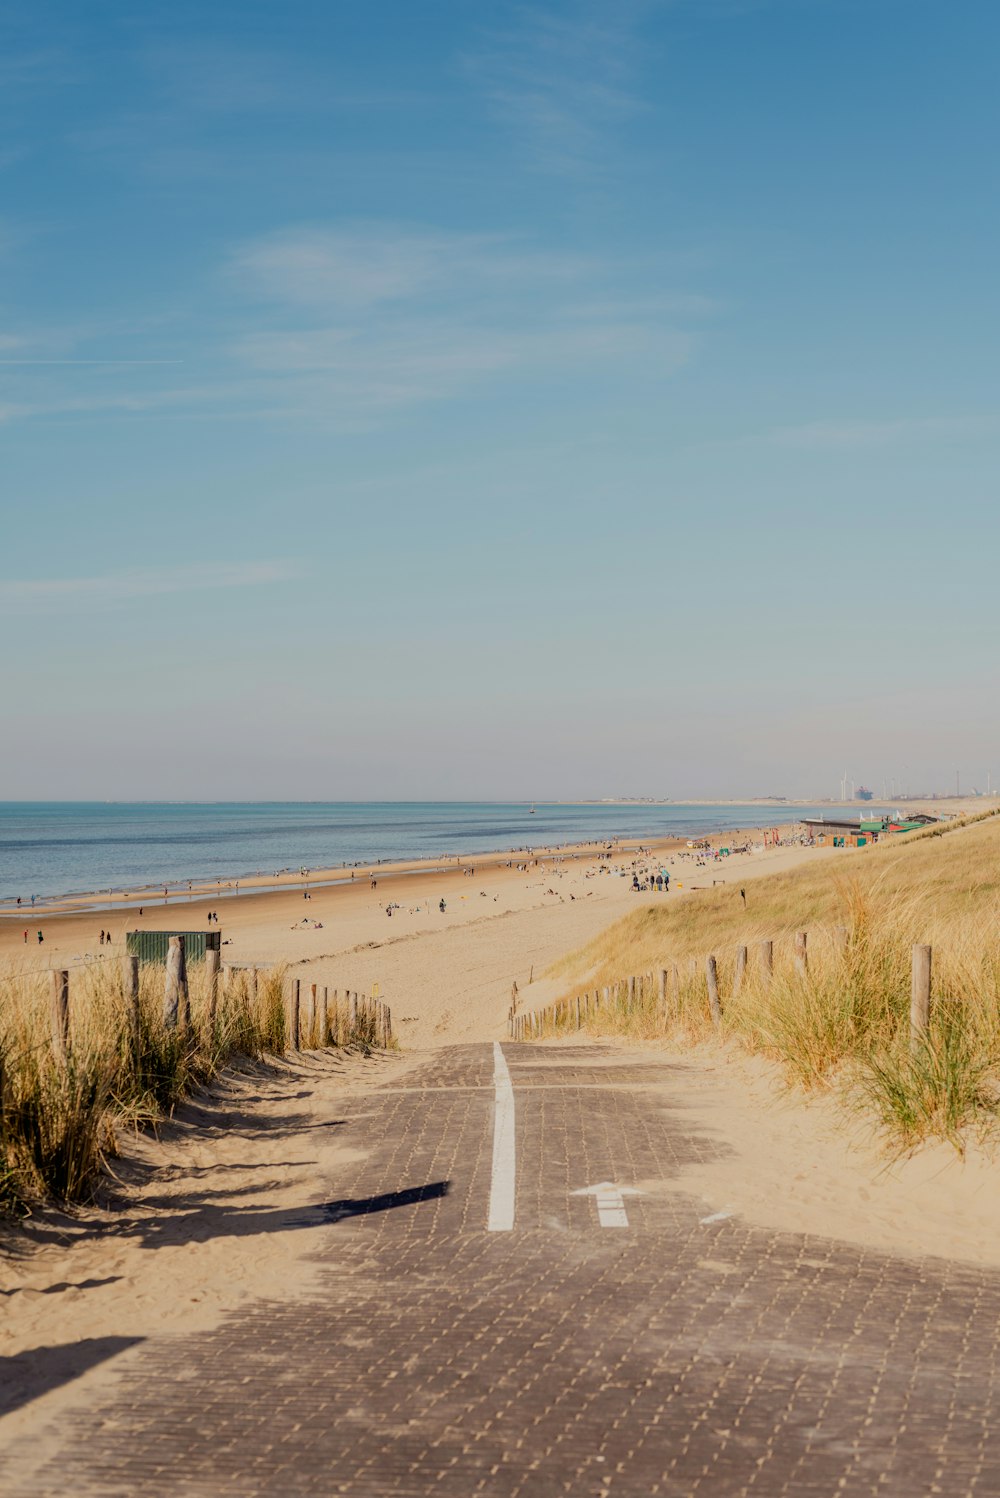 a road next to a beach